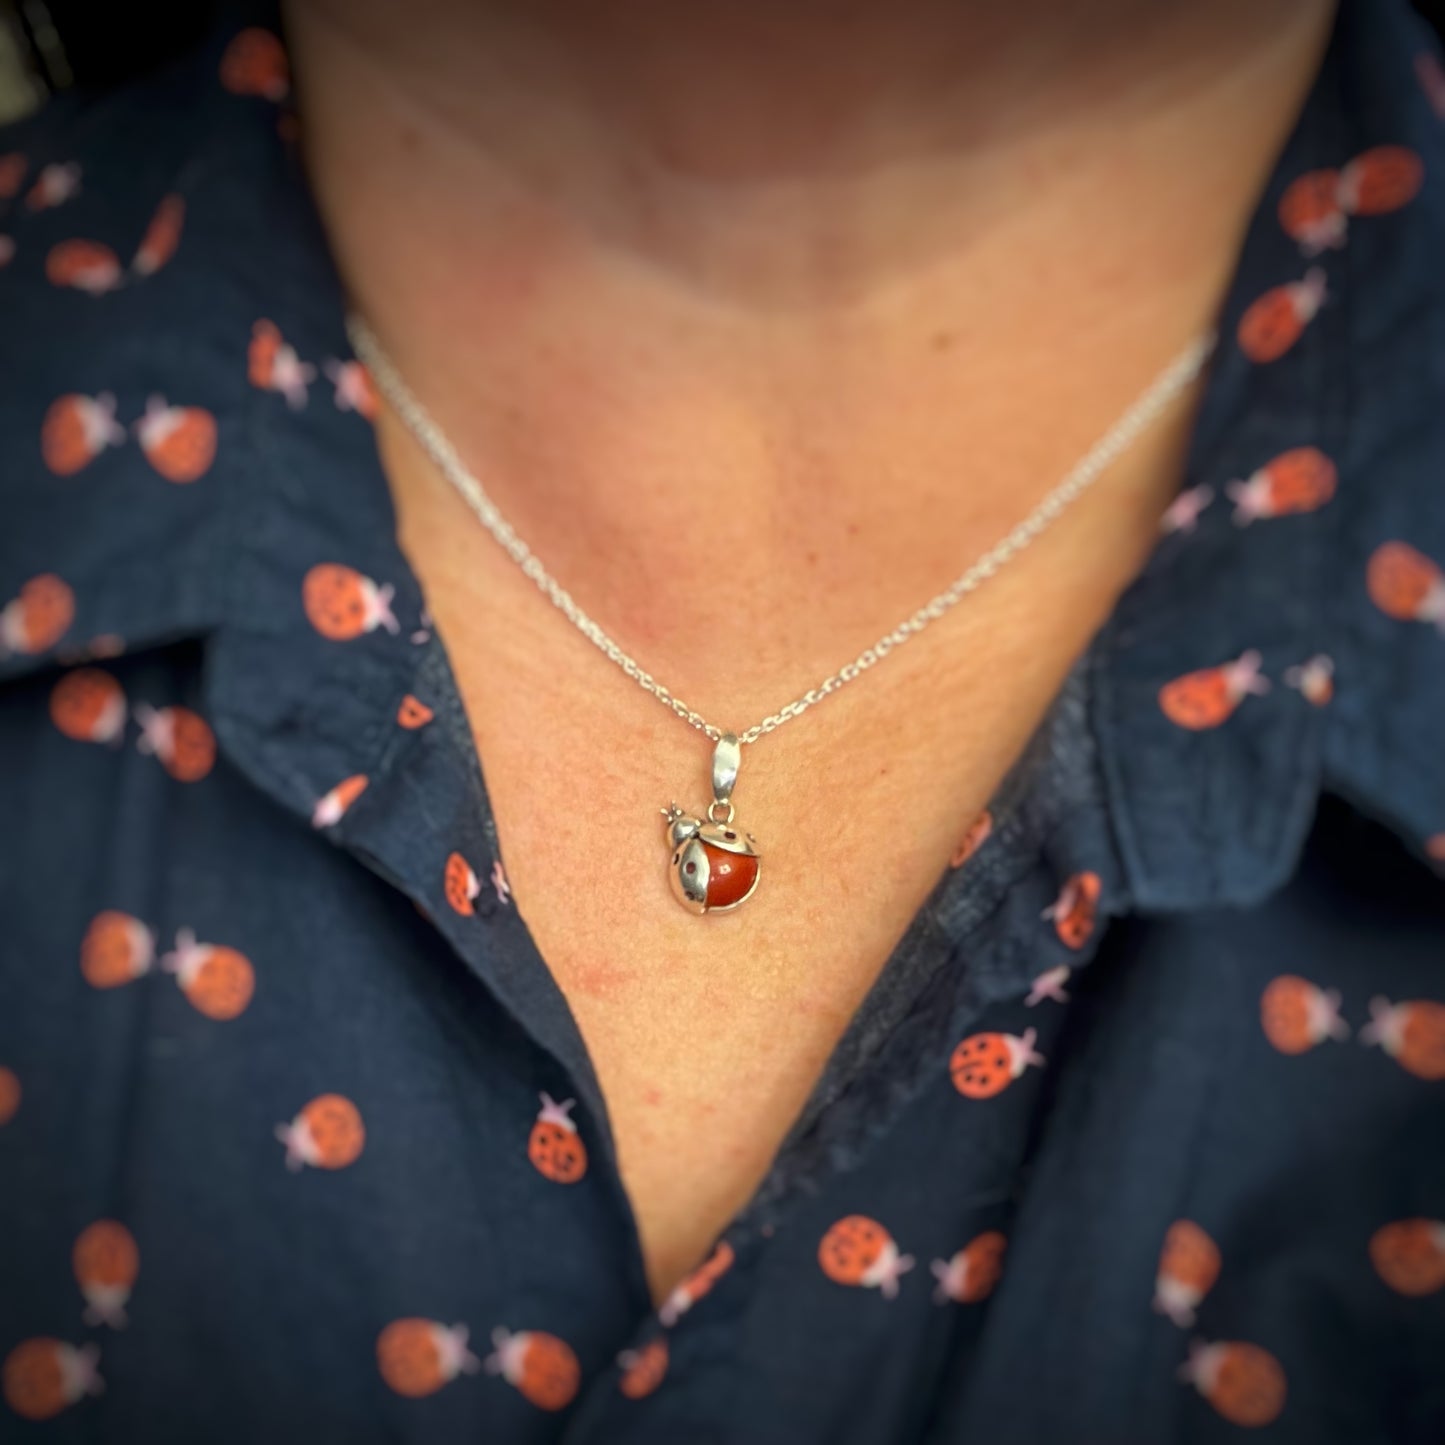 Red Ladybug Pendant Necklace